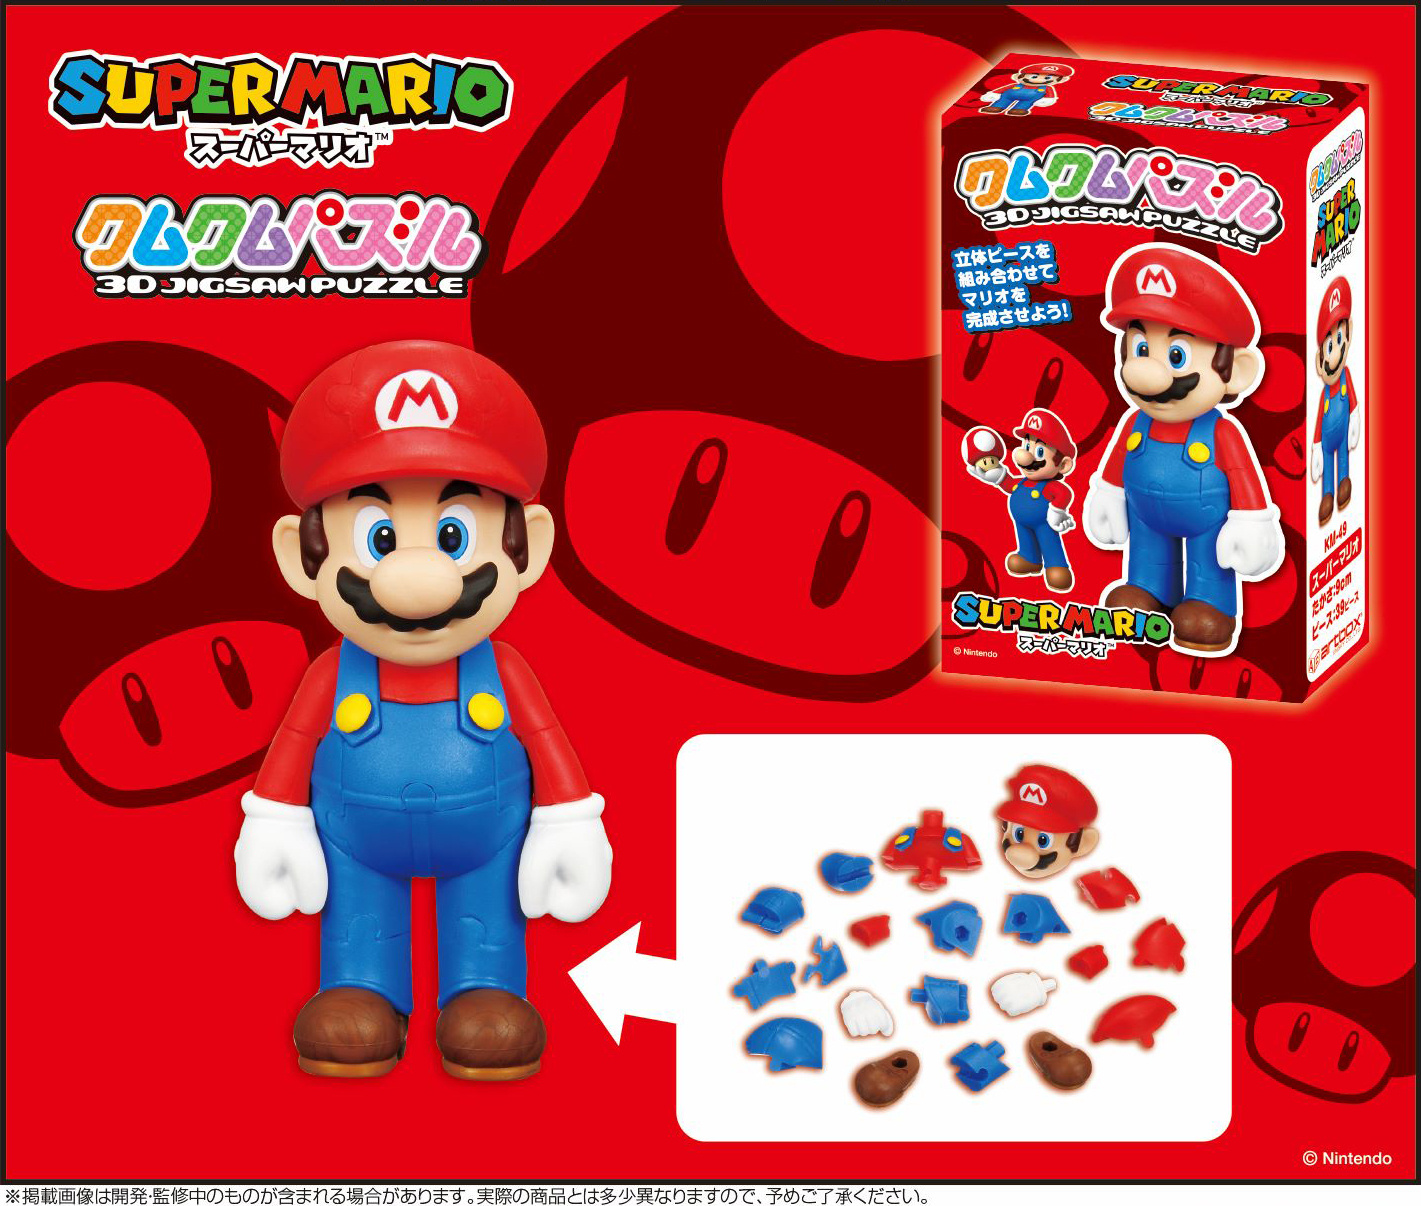 Puzzleshop on Instagram: Photo Puzzle, Super Mario. 48x33 cm, 500